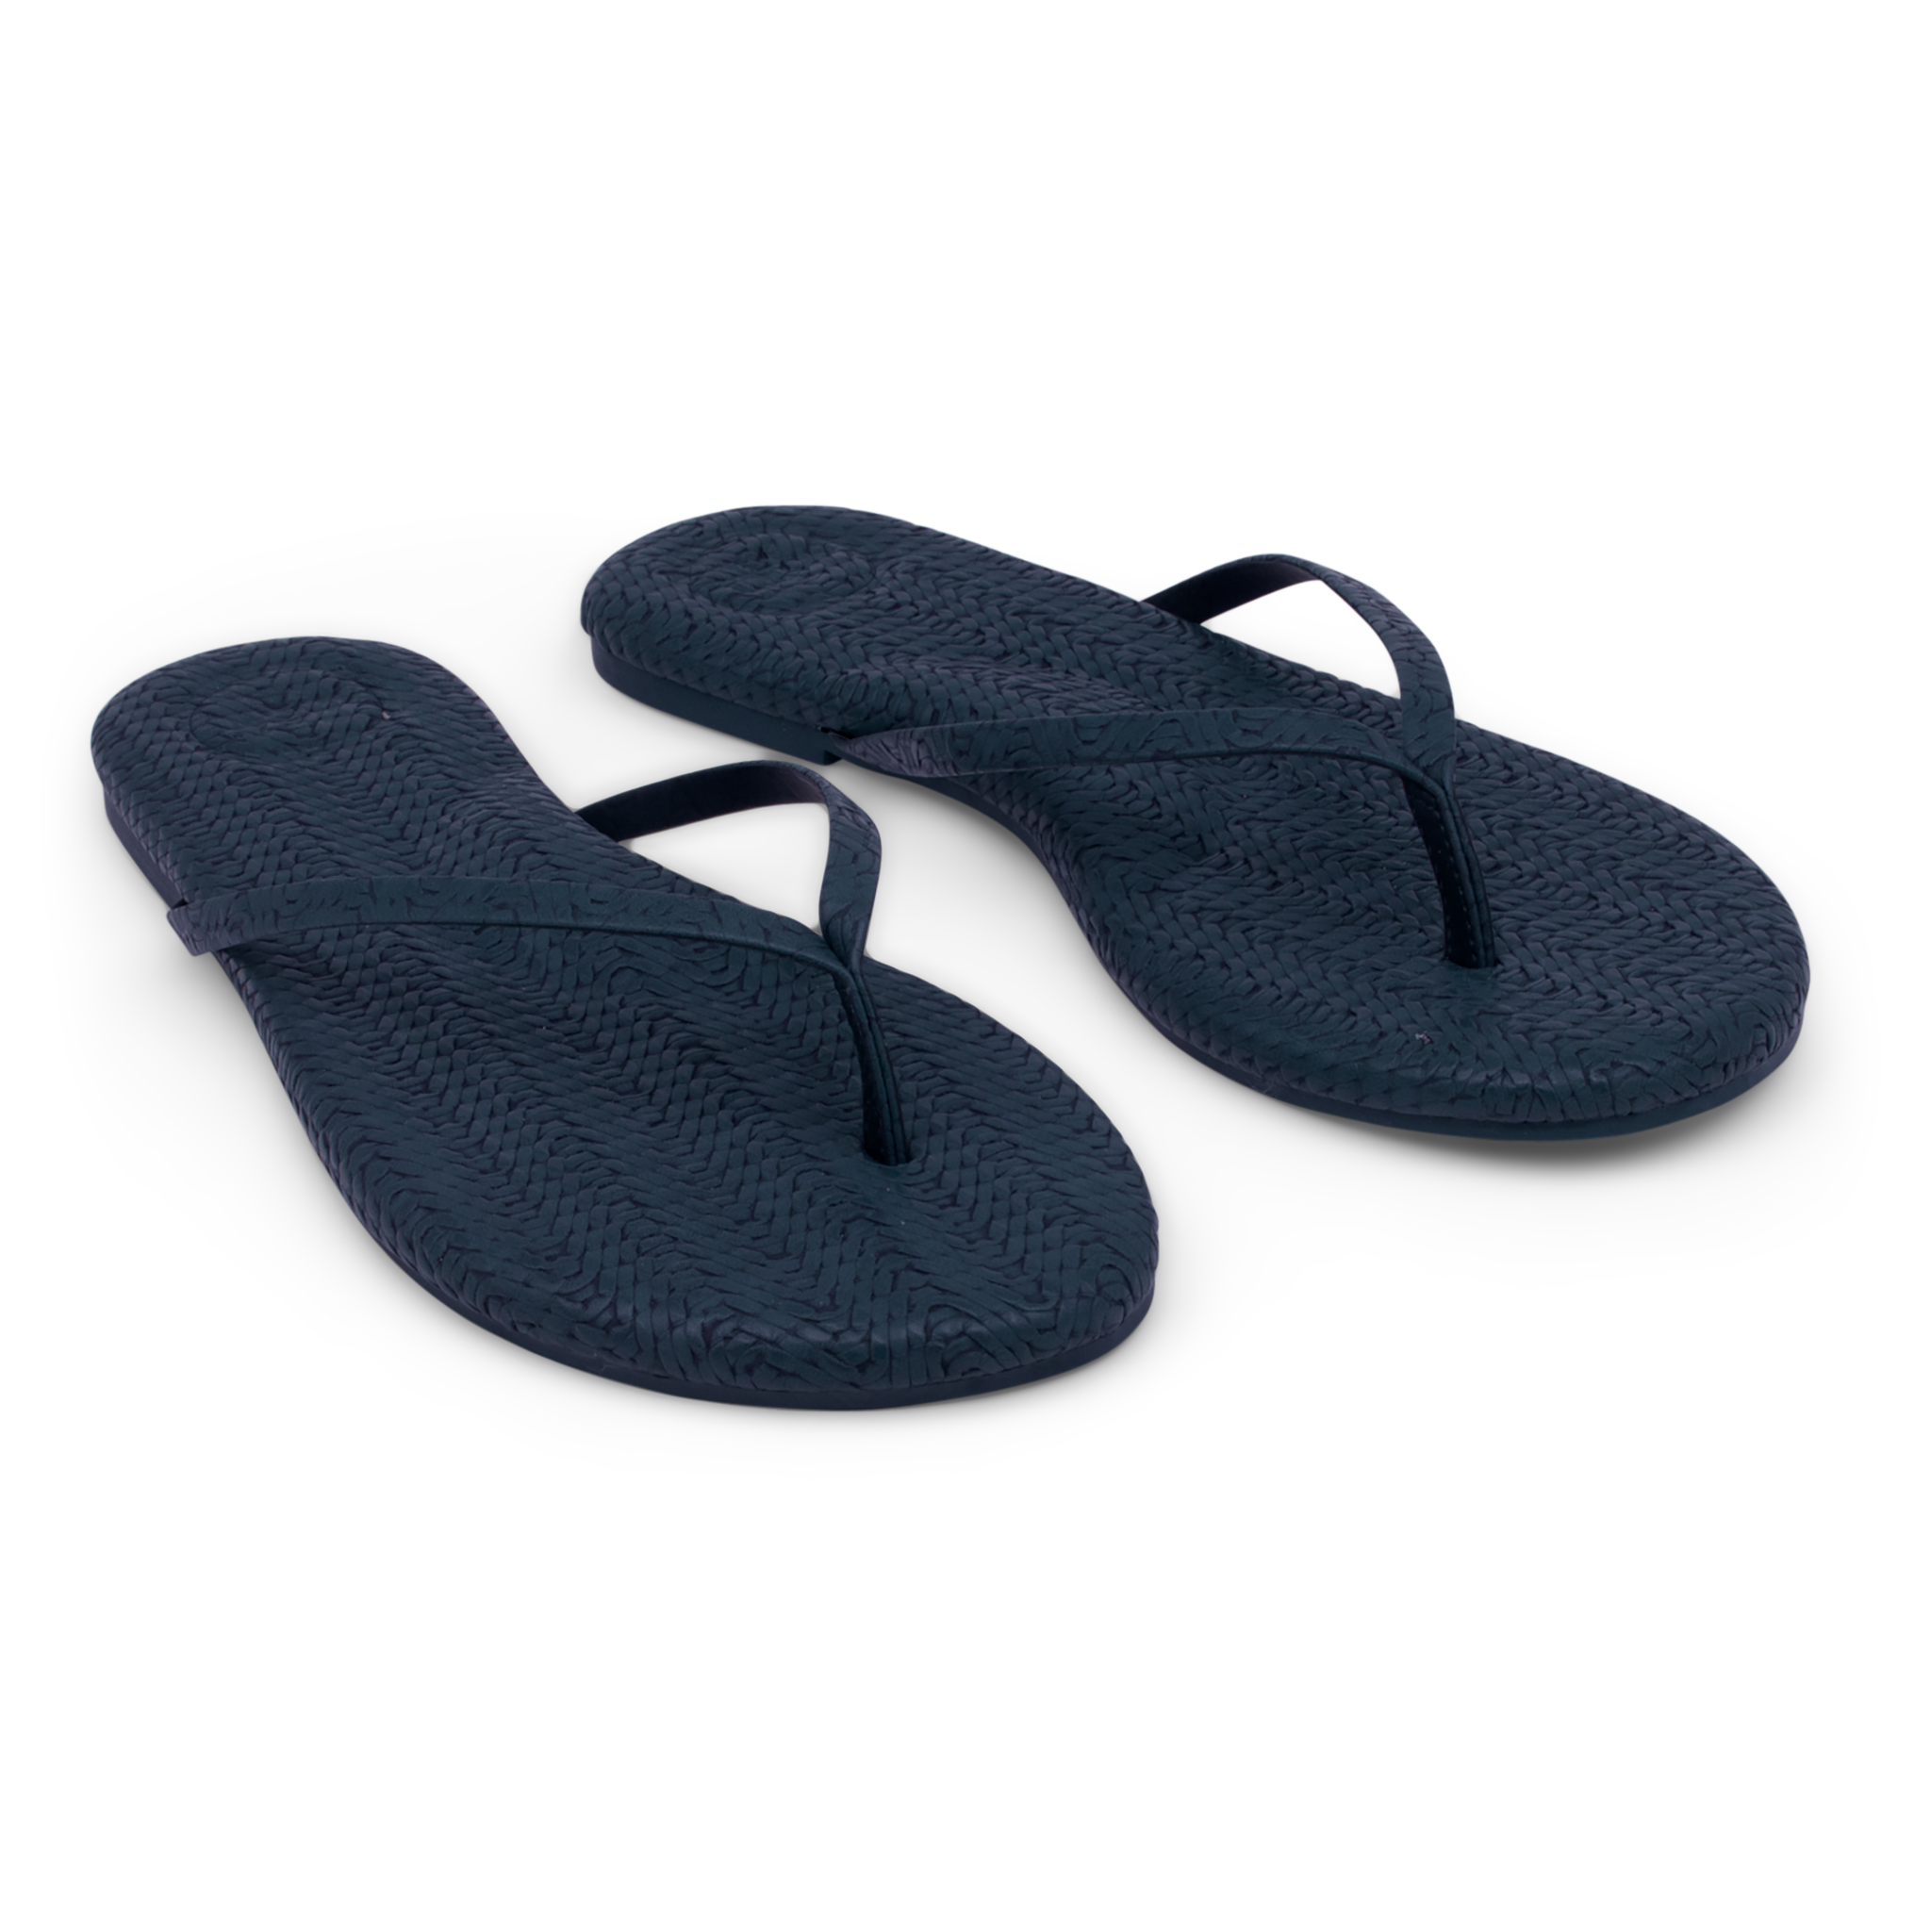 Flip flops basket weave solid navy sandal